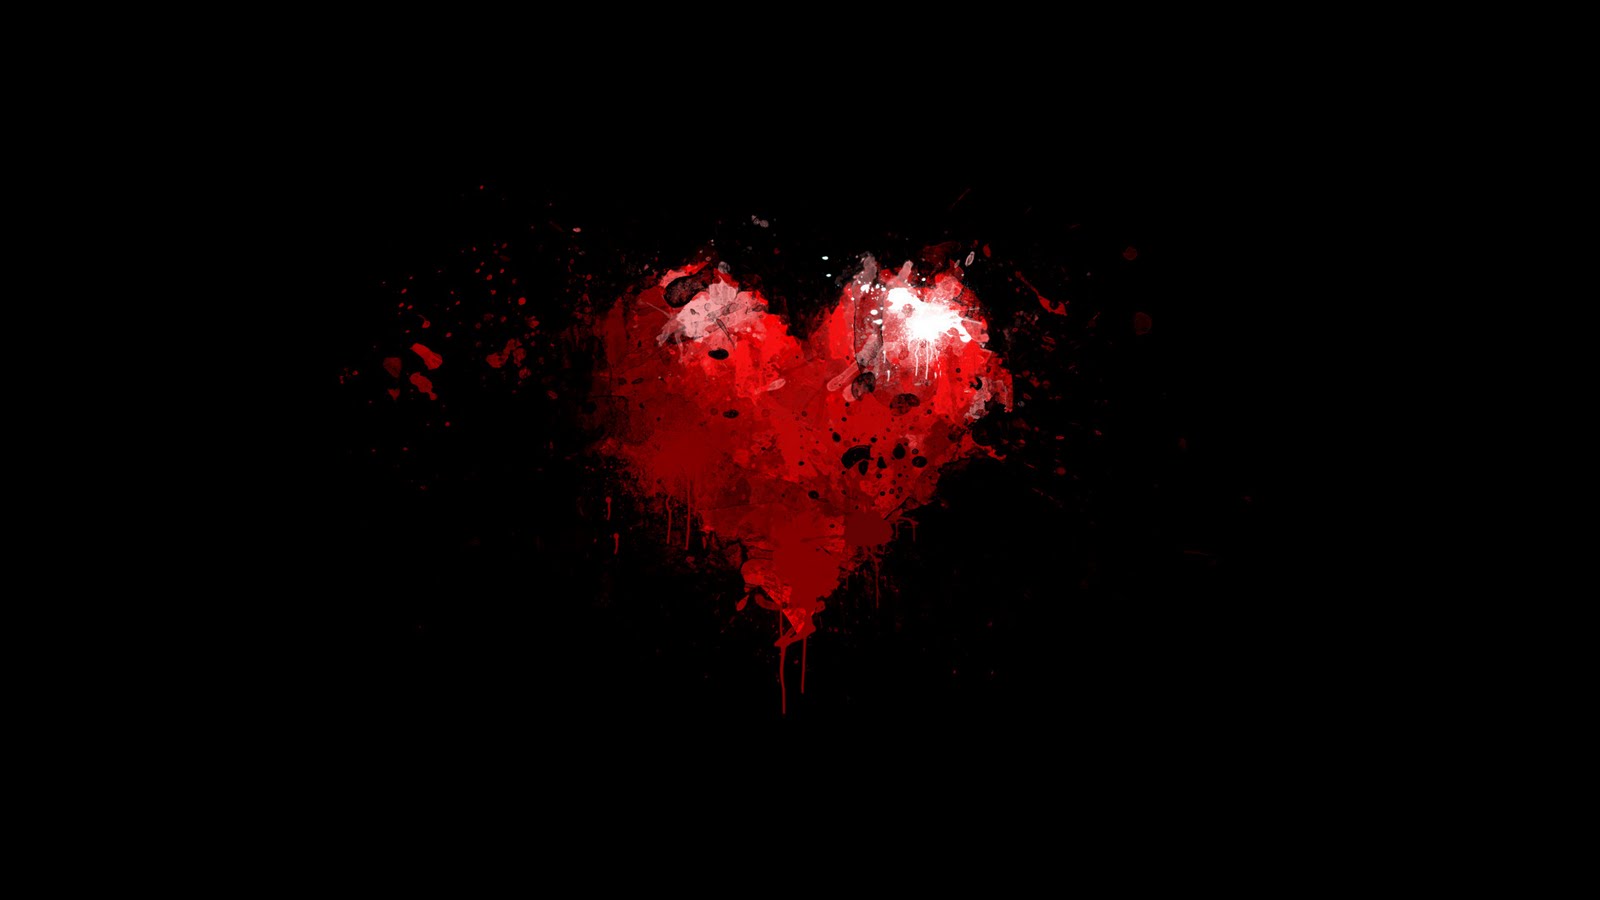 46+] Red and Black Heart Wallpaper - WallpaperSafari